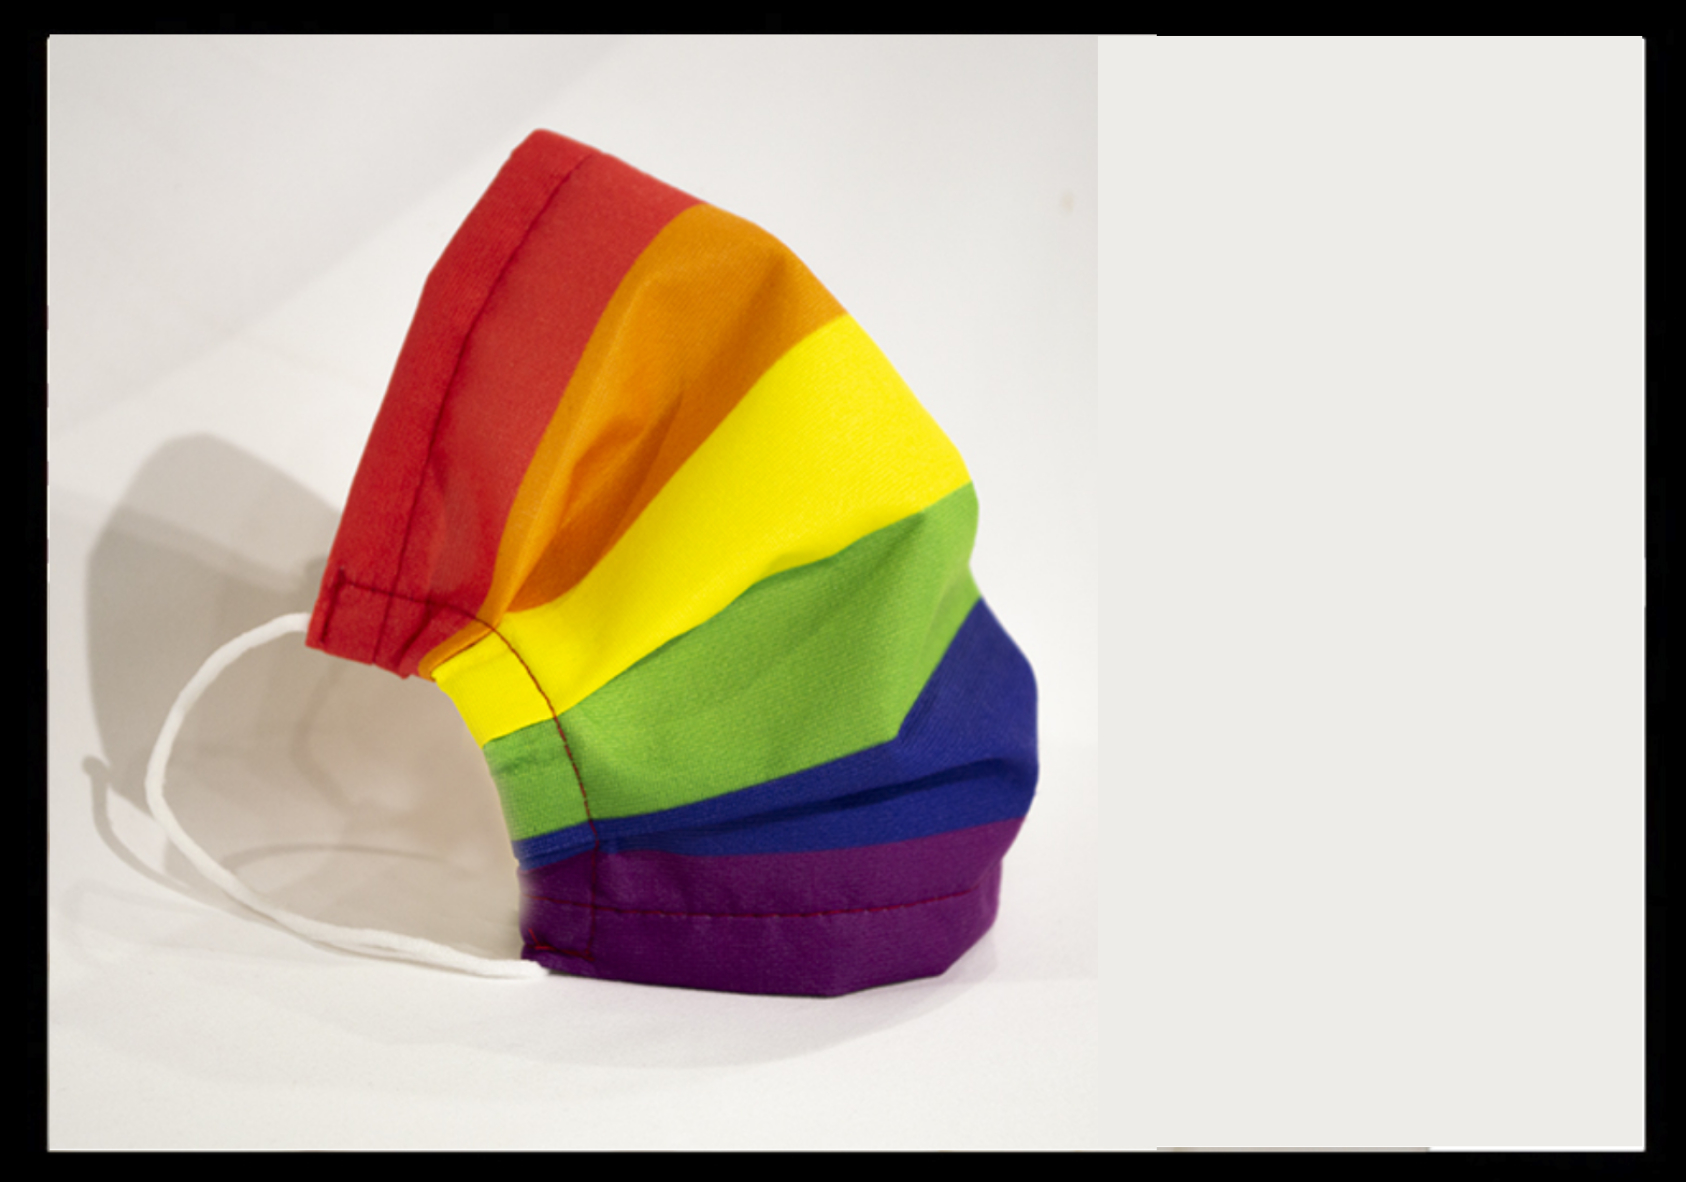 Mascarillas higiénicas Orgullo gay arcoiris LGTBI